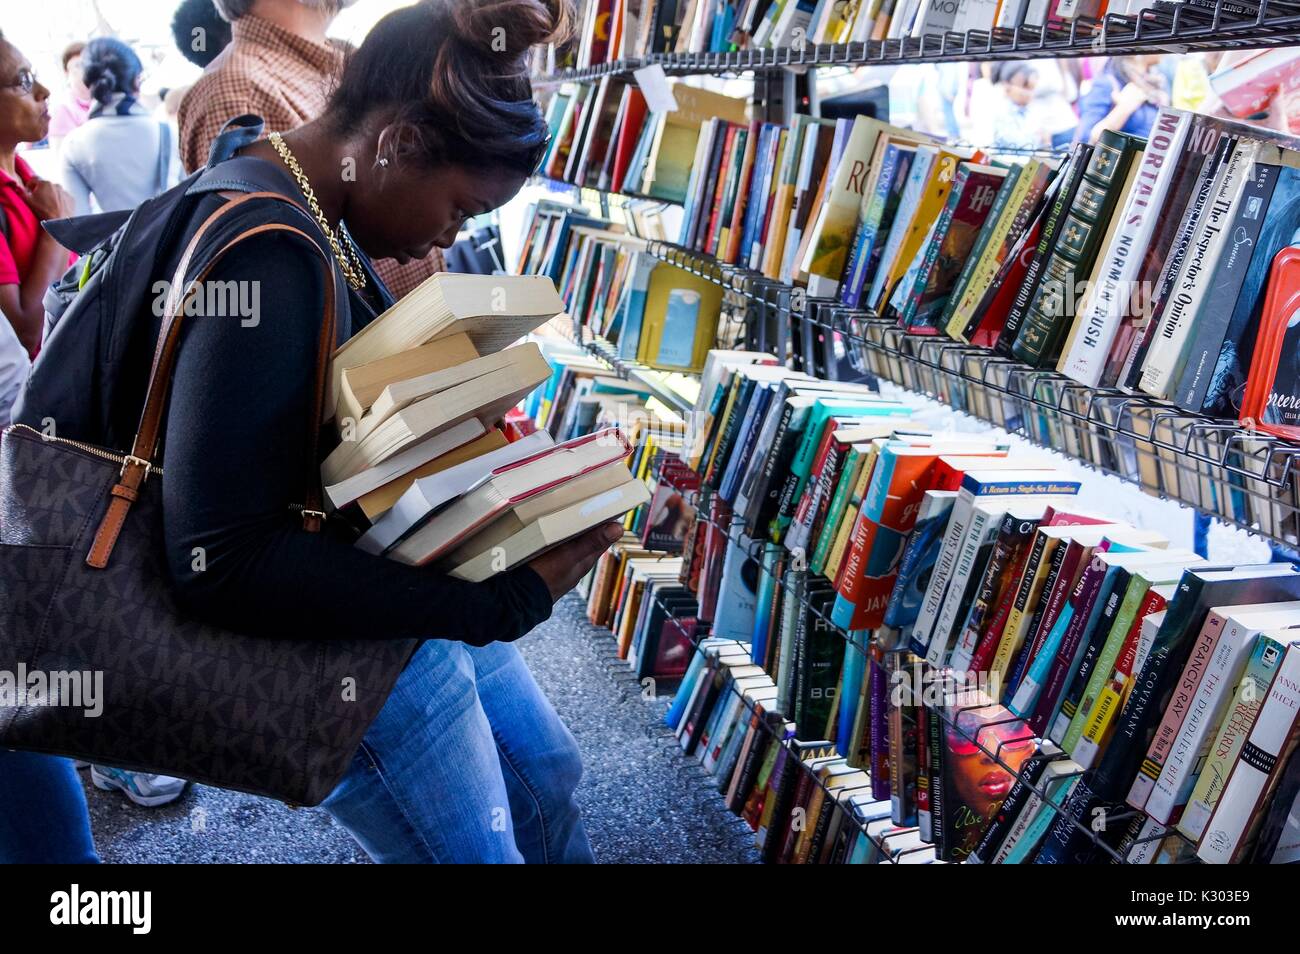 Une jeune femme s'efforce de maintenir une pile de livres dans ses bras alors qu'elle observe les titres des livres d'occasion sur une étagère pendant le Festival du livre de Baltimore, Baltimore, Maryland, 2013. Avec la permission de Eric Chen. Banque D'Images